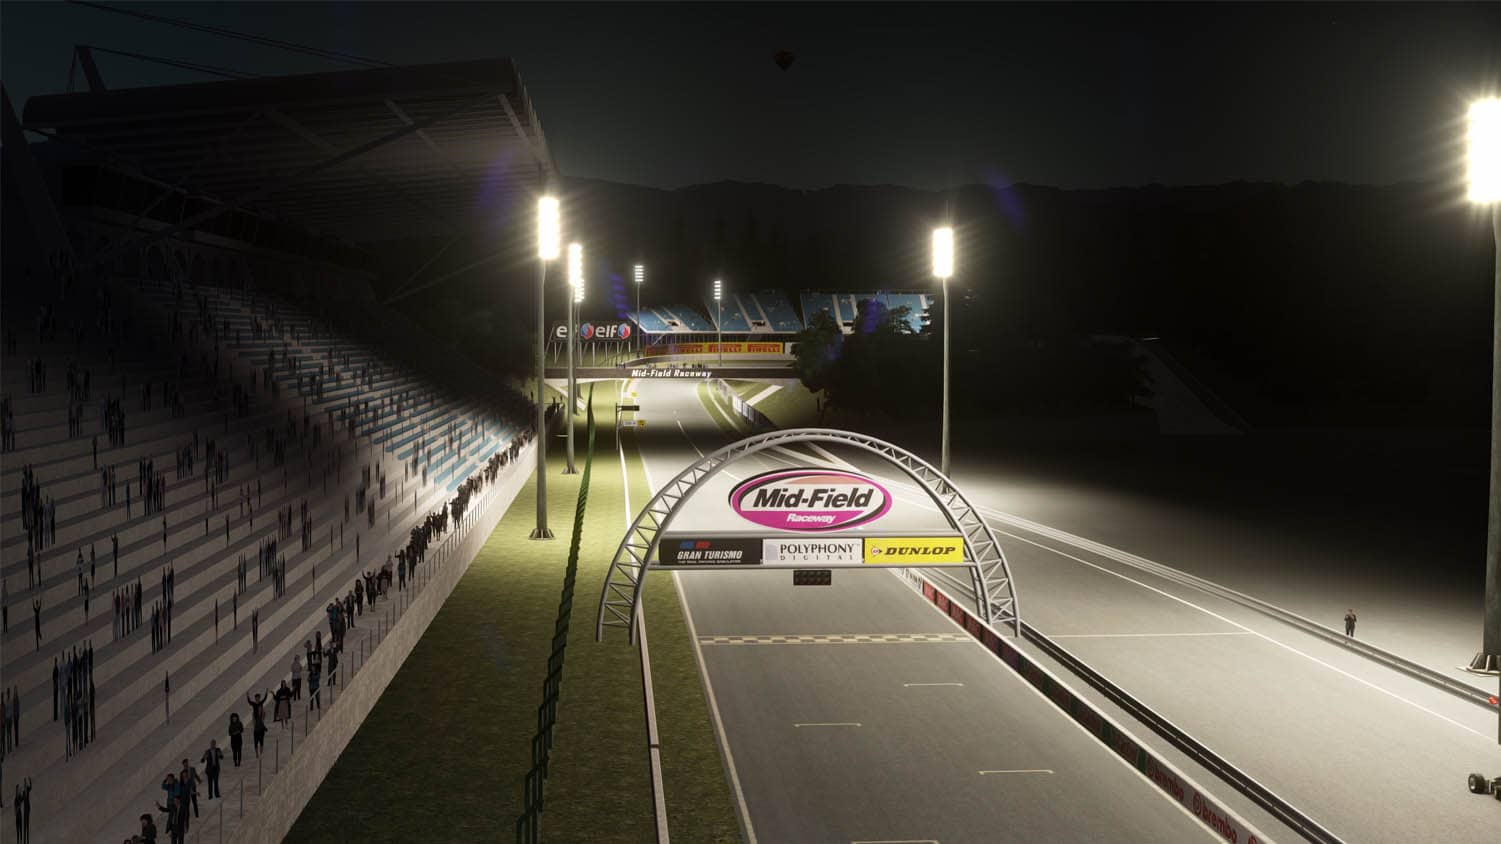 Gran_Turismo_midfield_raceway_Night_Assetto_Corsa